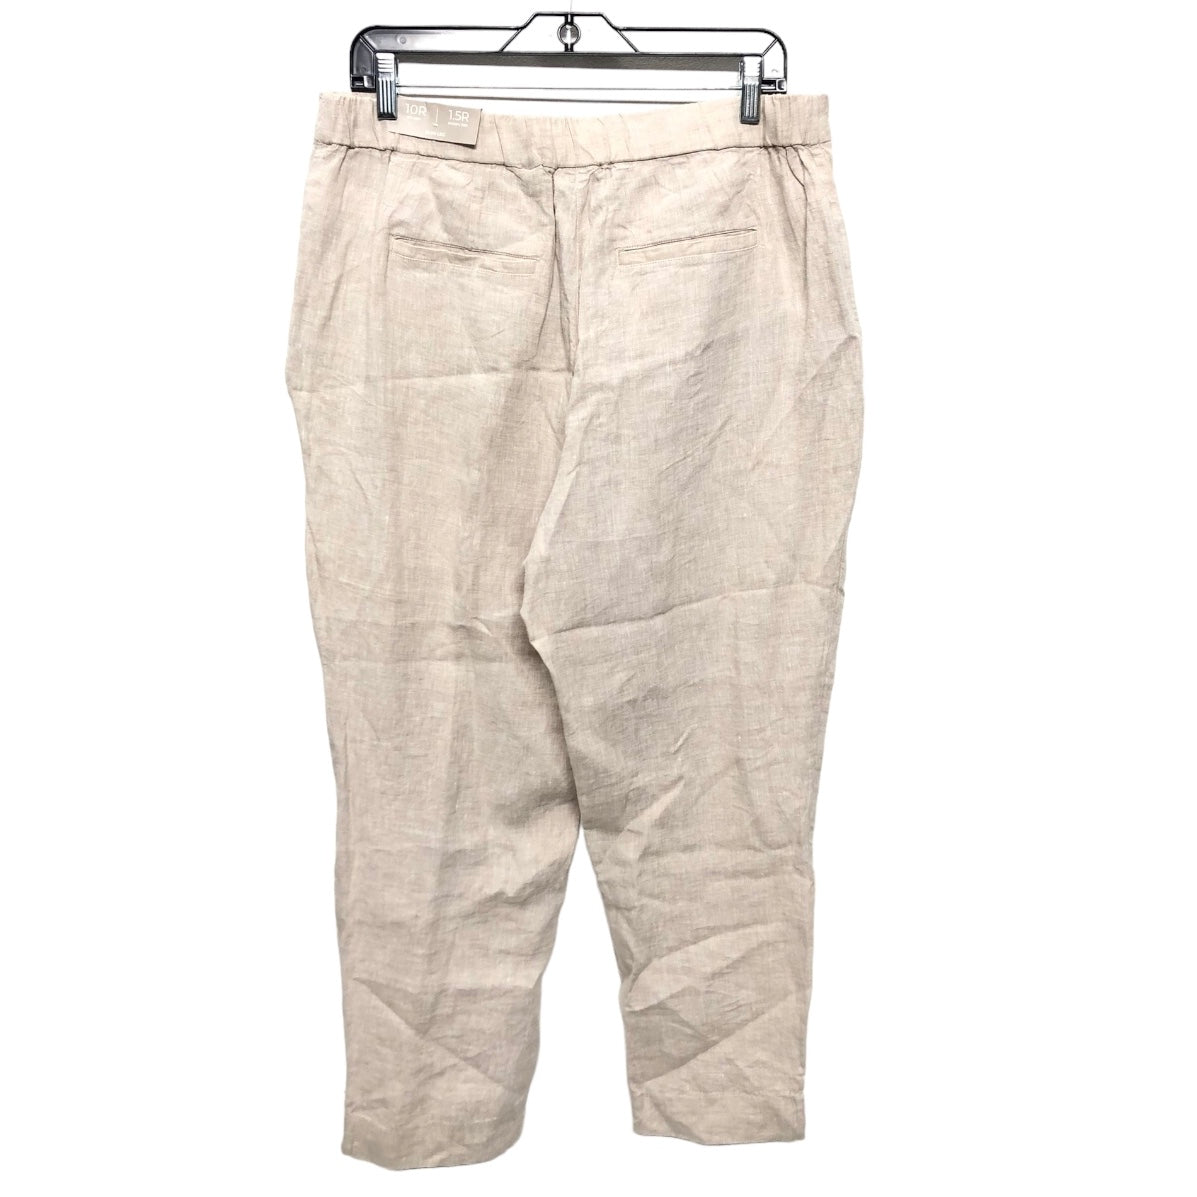 Beige Pants Linen Chicos, Size 10